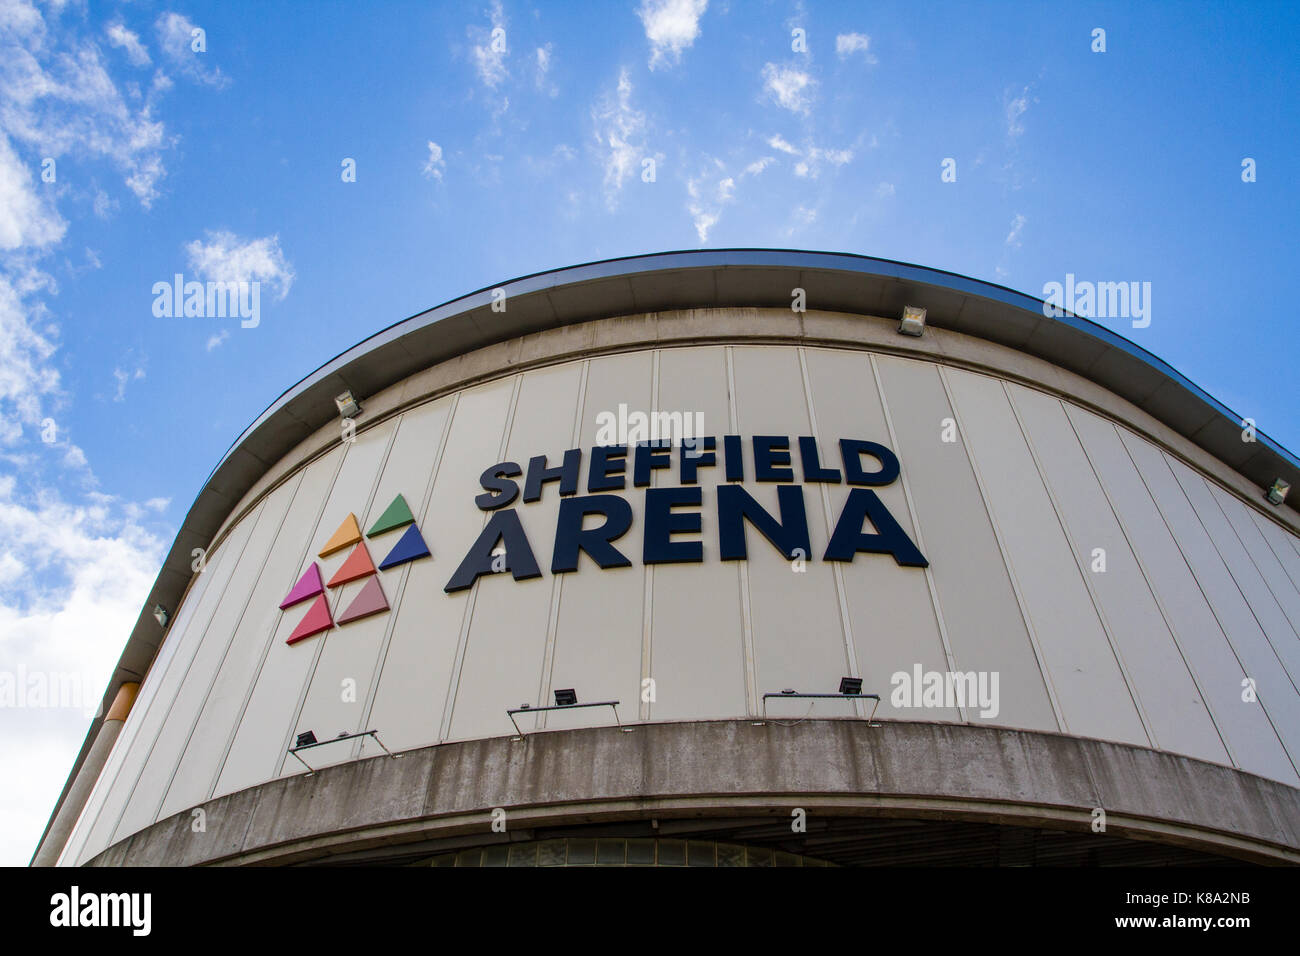 SHEFFIELD ARENA, Sheffield, Großbritannien - 12 August 2017. Ein externes Bild der populären Musik und Veranstaltungsort der Sheffield Arena in Sheffield, Großbritannien. Stockfoto